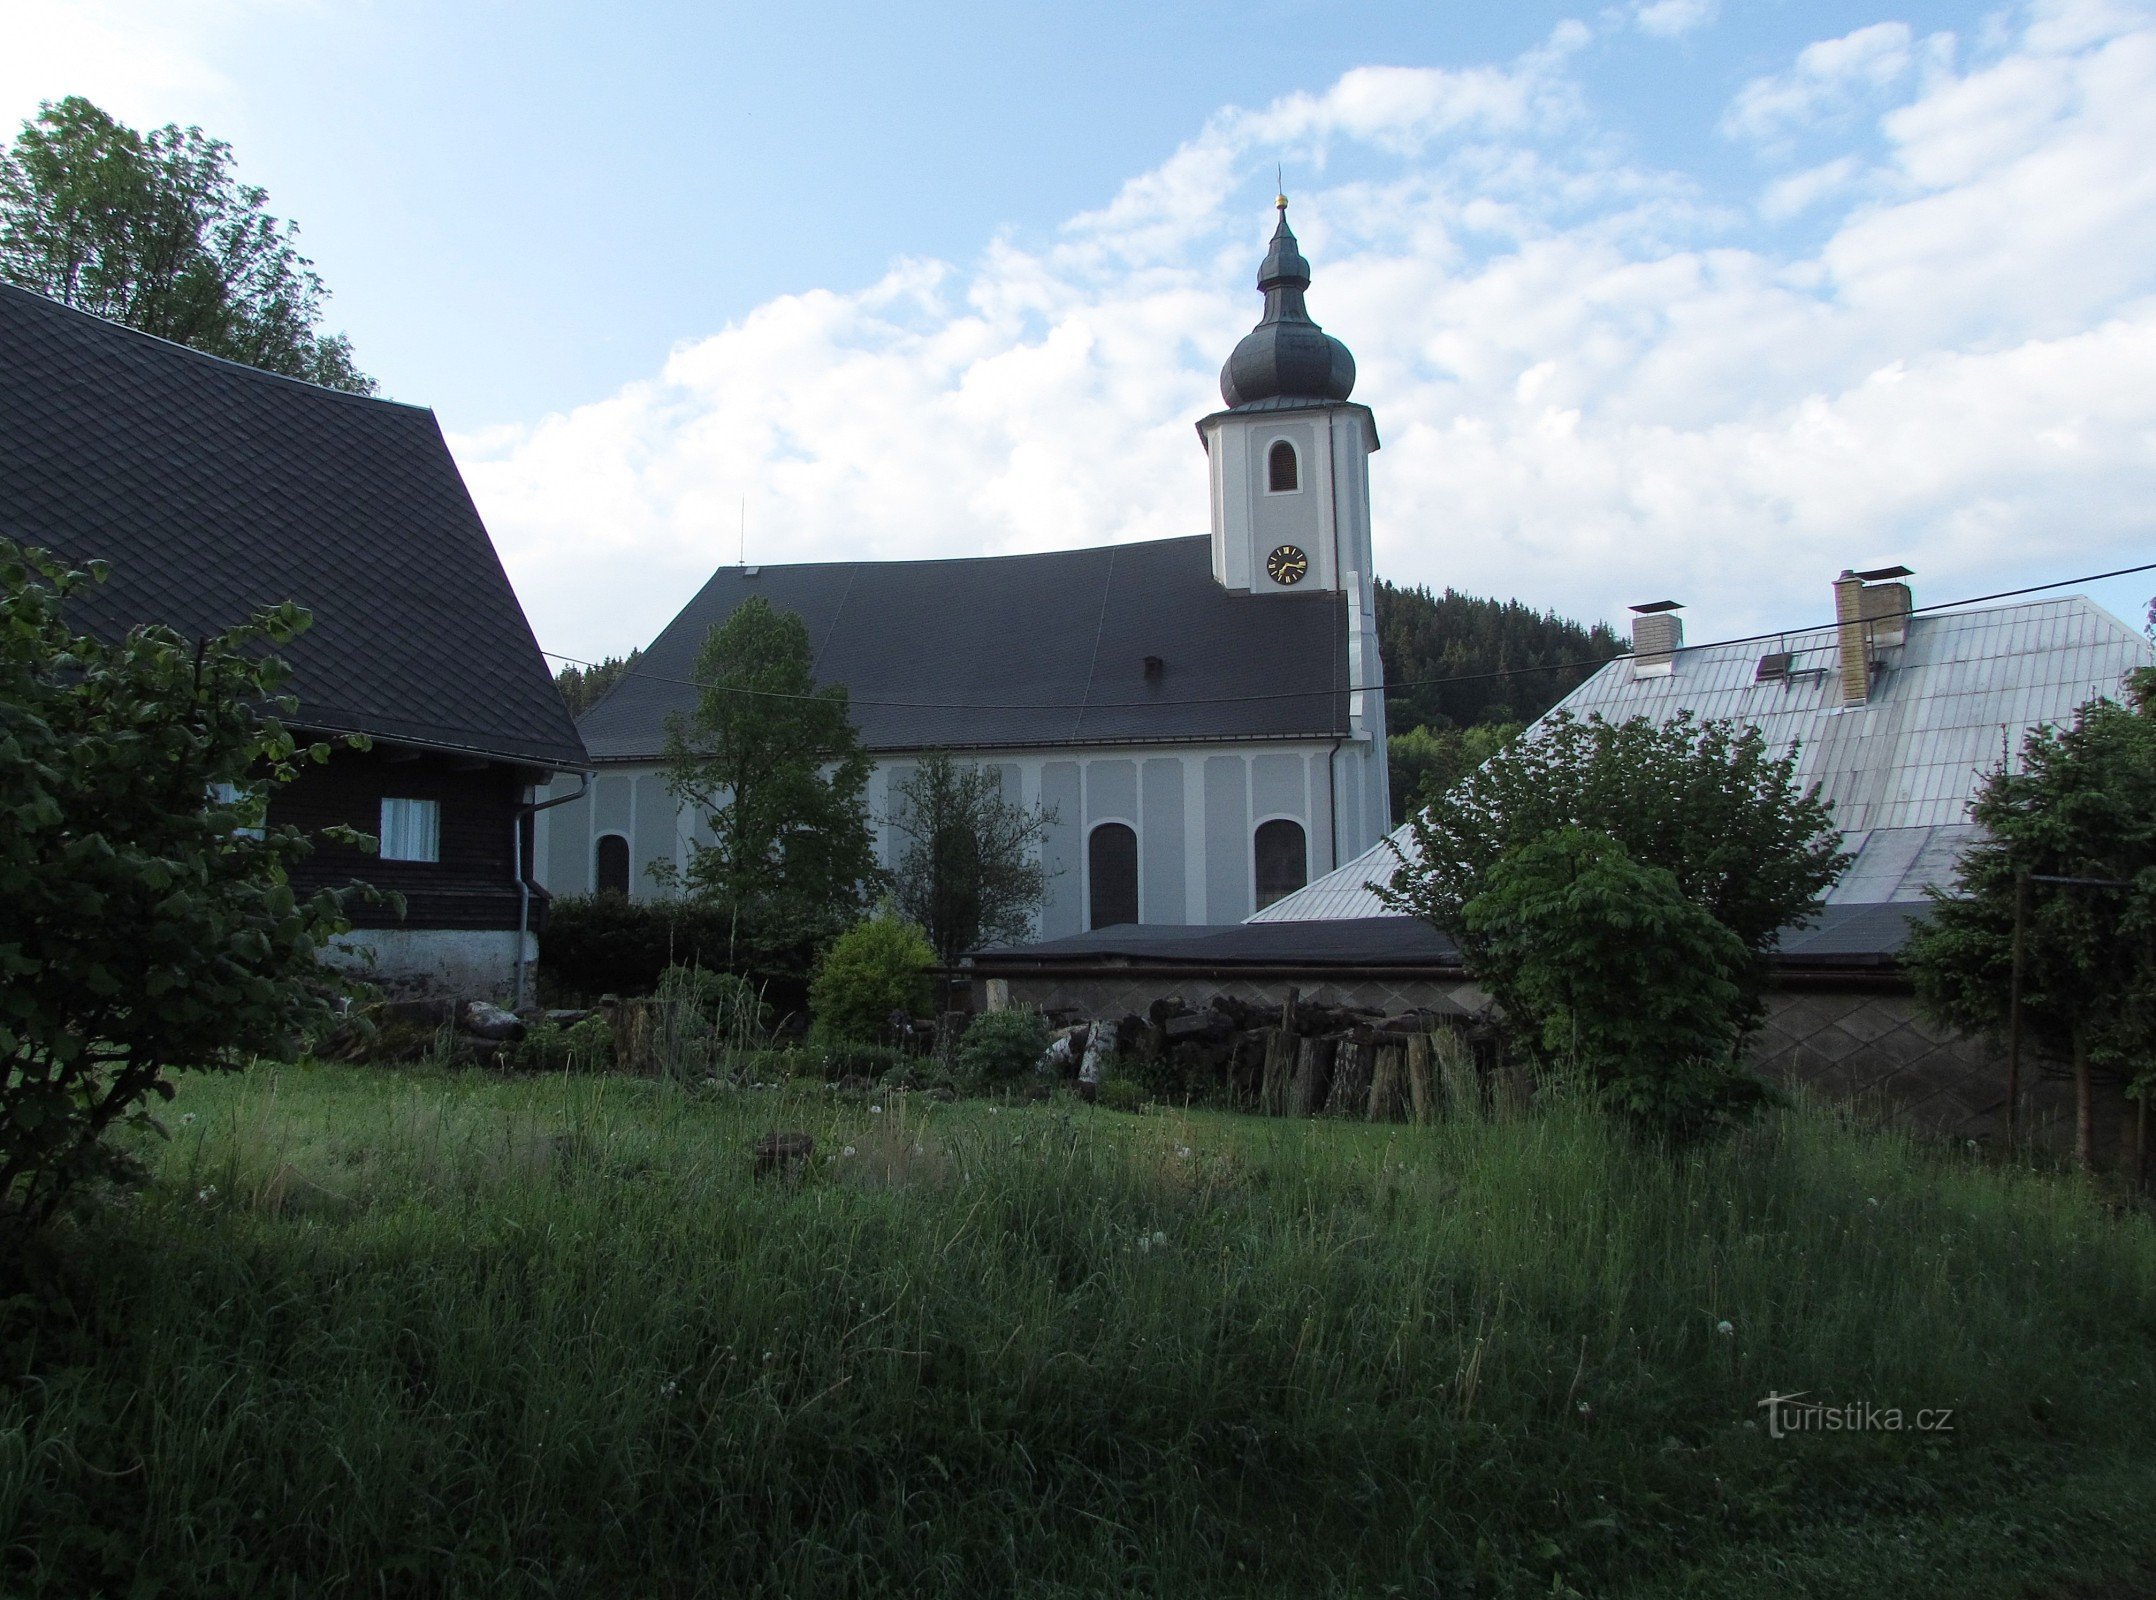 Гержмановіце – церква Св. Андрія та інші сакральні пам’ятки